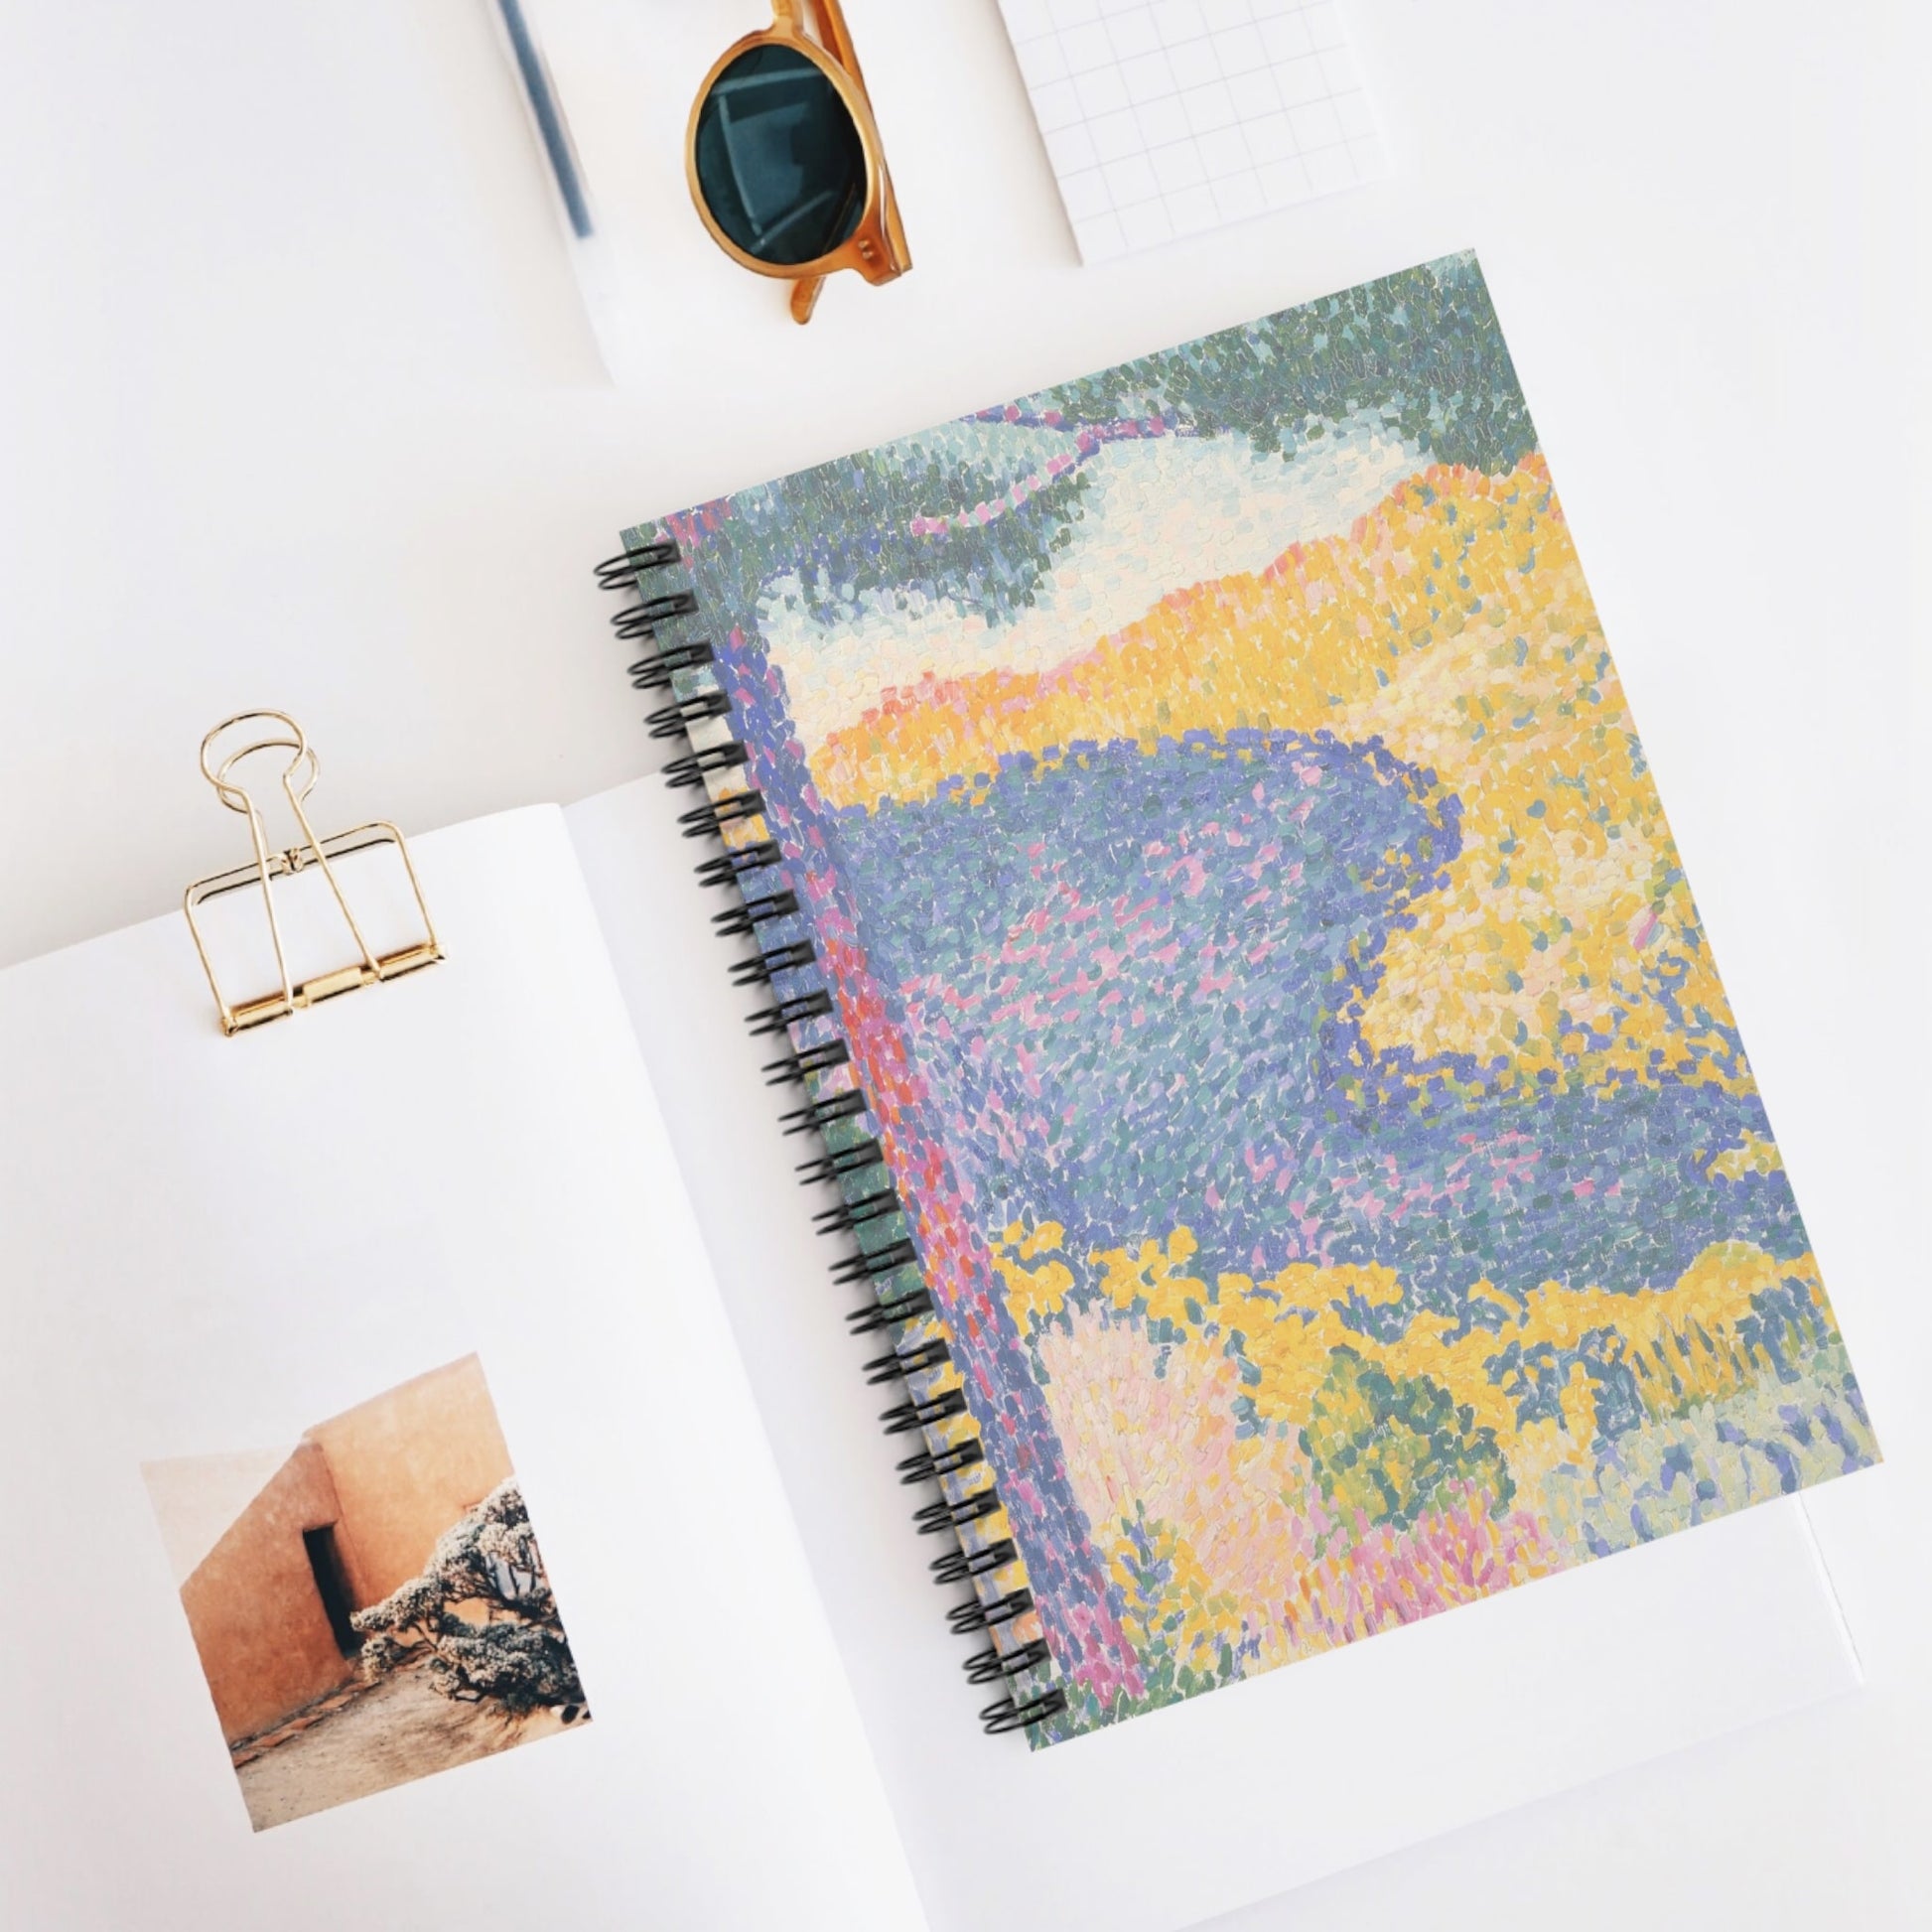 Colorful Landscape Spiral Notebook Displayed on Desk